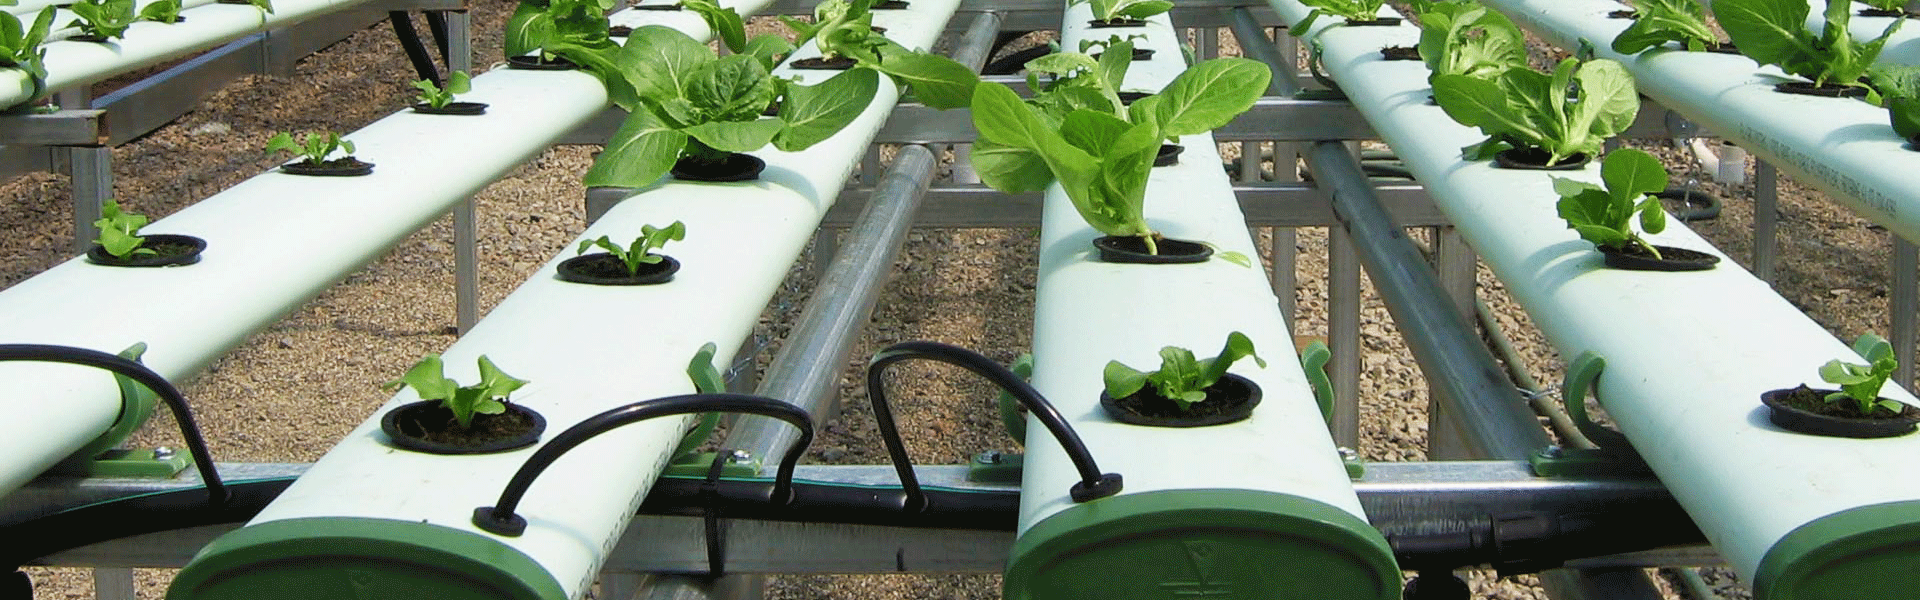 hydroponic farming San Diego